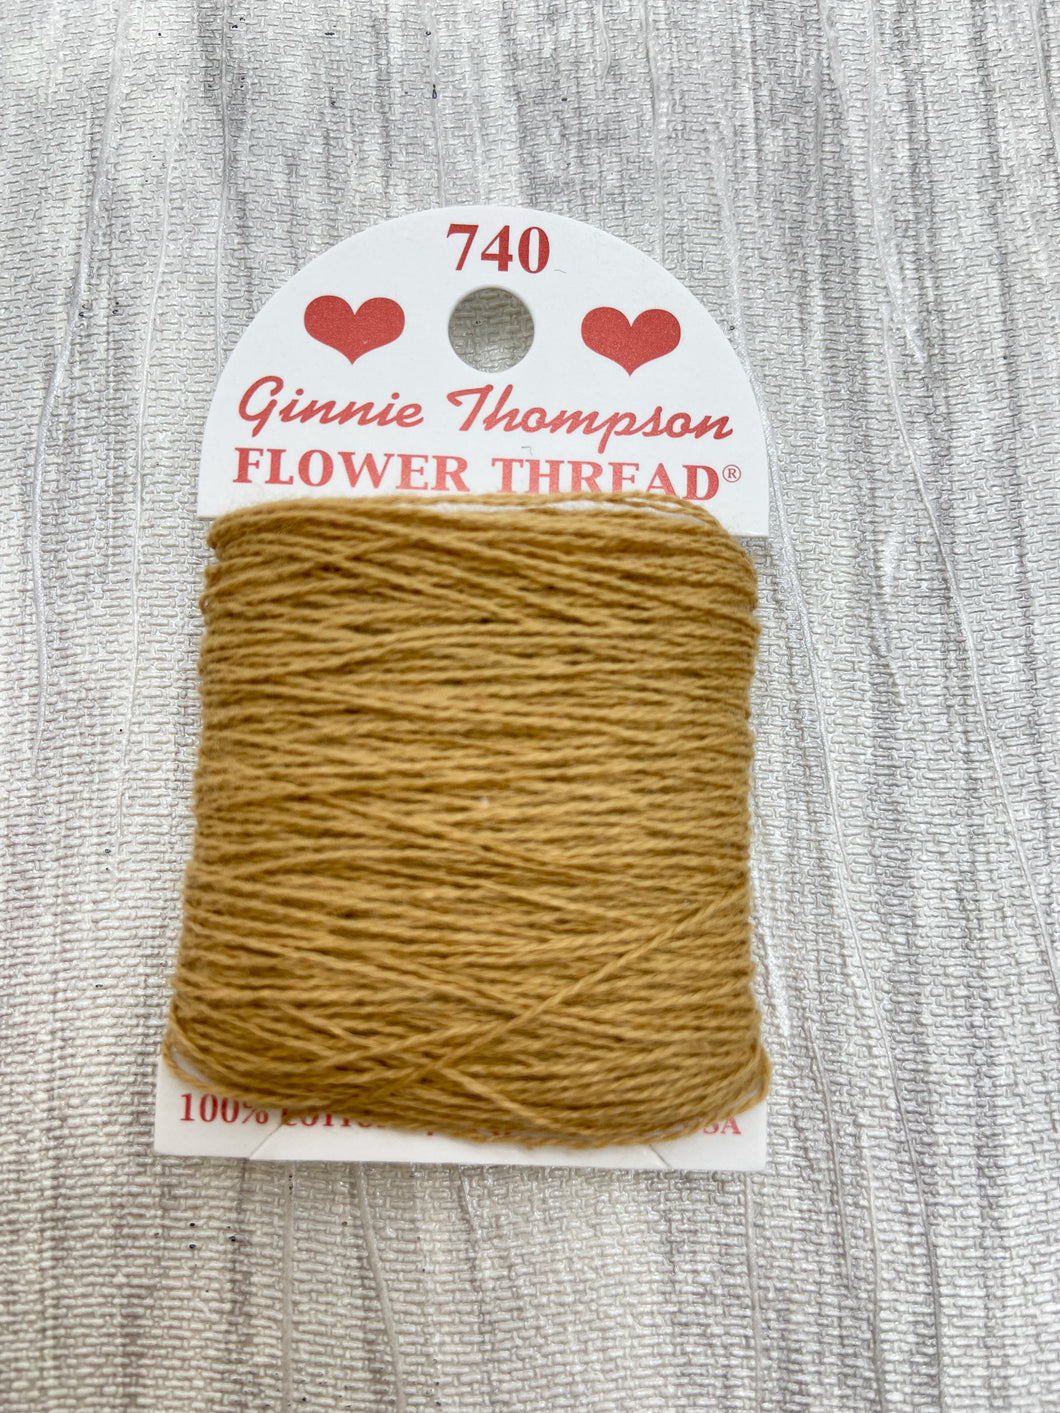 Honey Brown (740) Ginnie Thompson Flower Thread